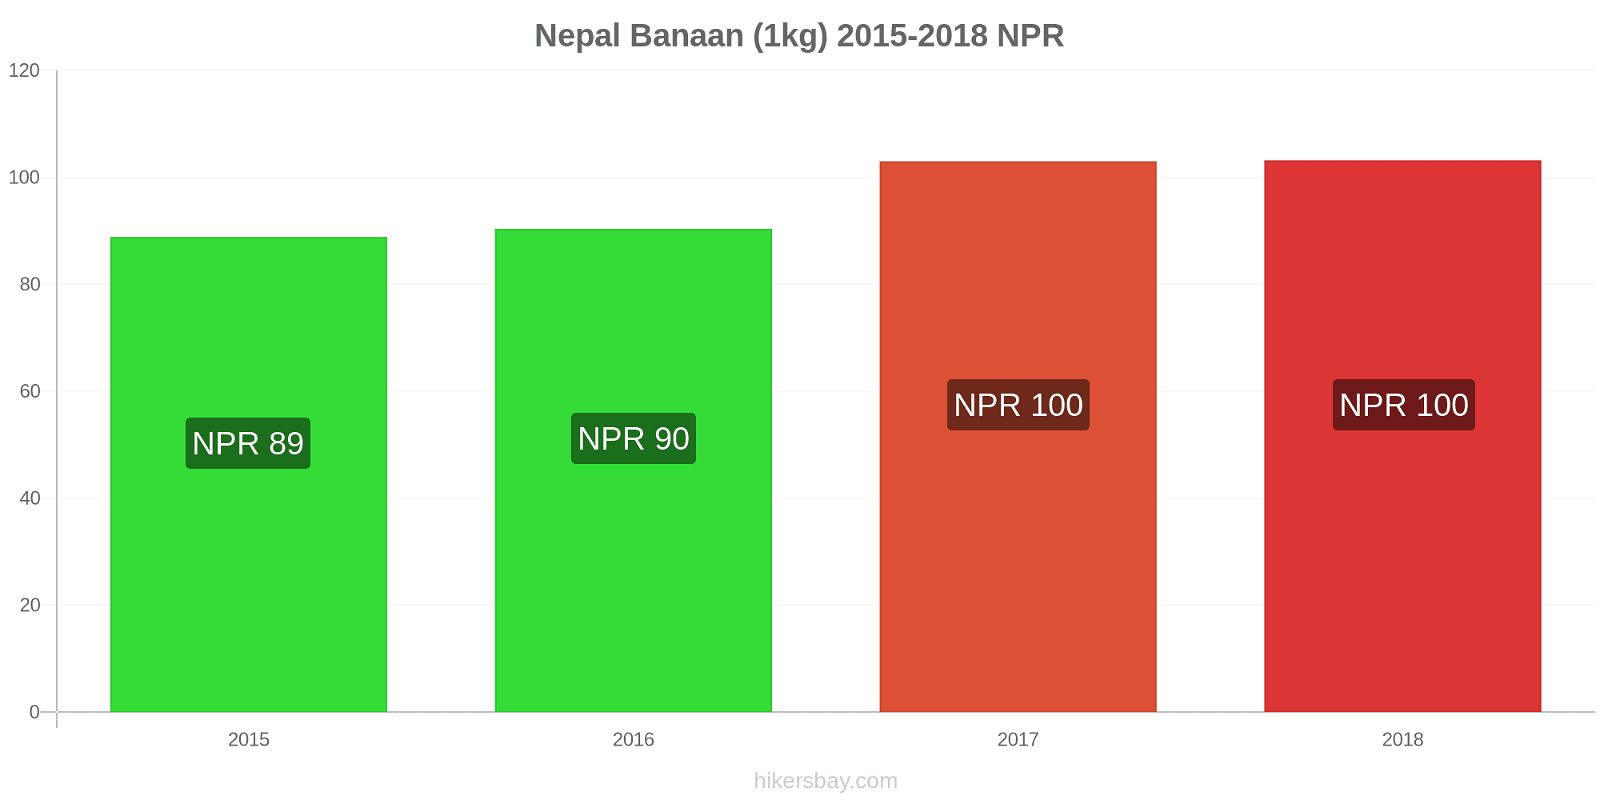 Nepal prijswijzigingen Bananen (1kg) hikersbay.com